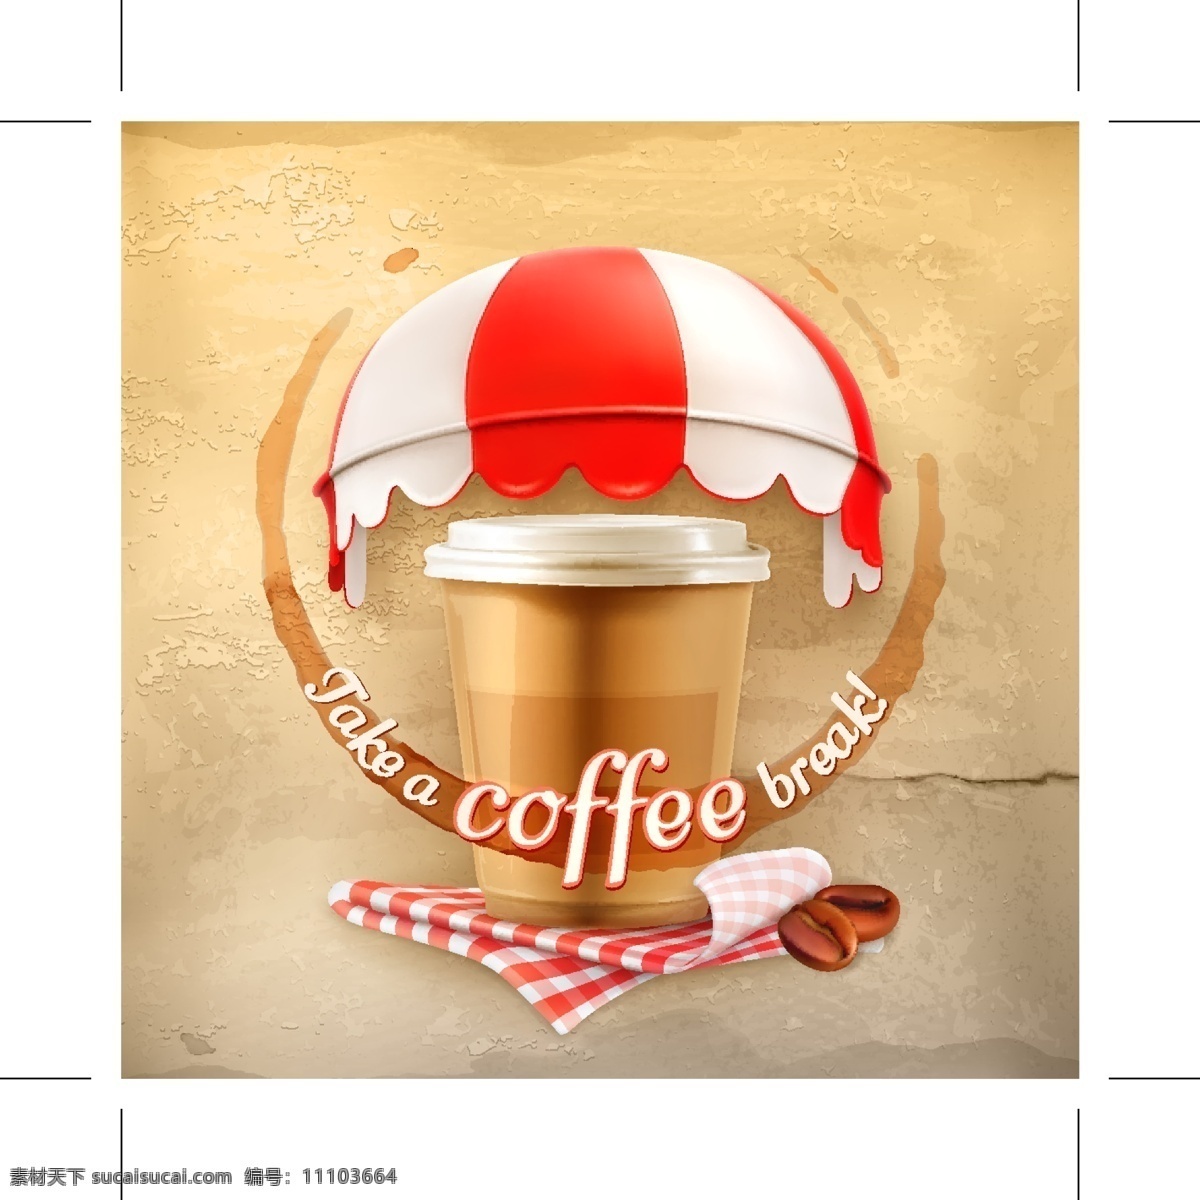 咖啡 奶茶 矢量 coffee 广告素材 奶茶背景 伞 饮料